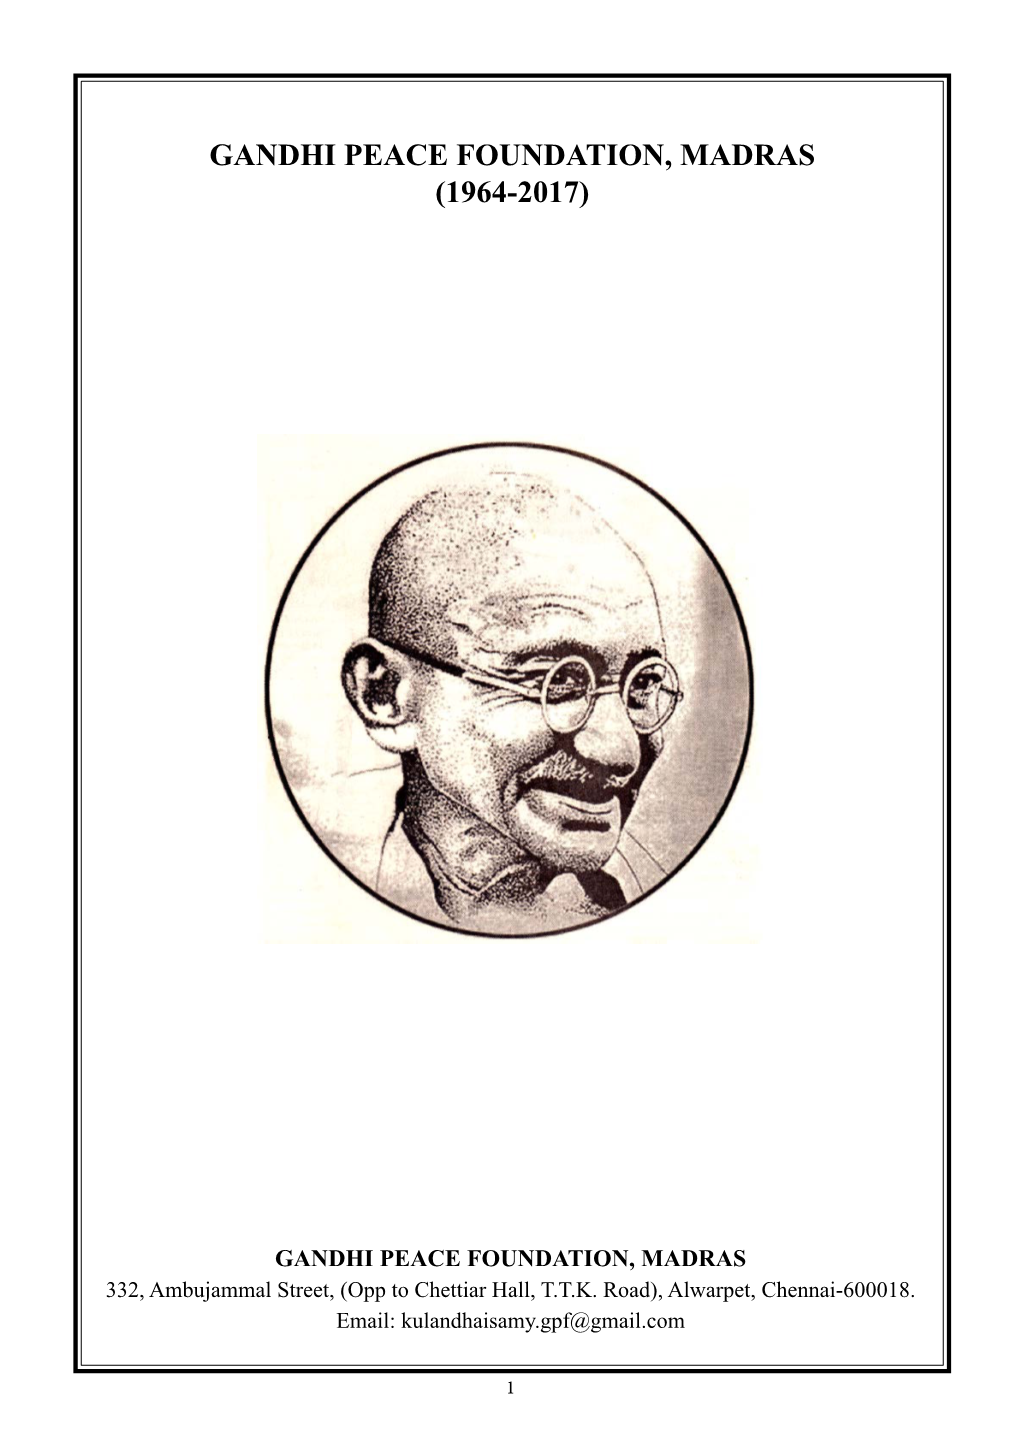 Gandhi Peace Foundation, Madras (1964-2017)